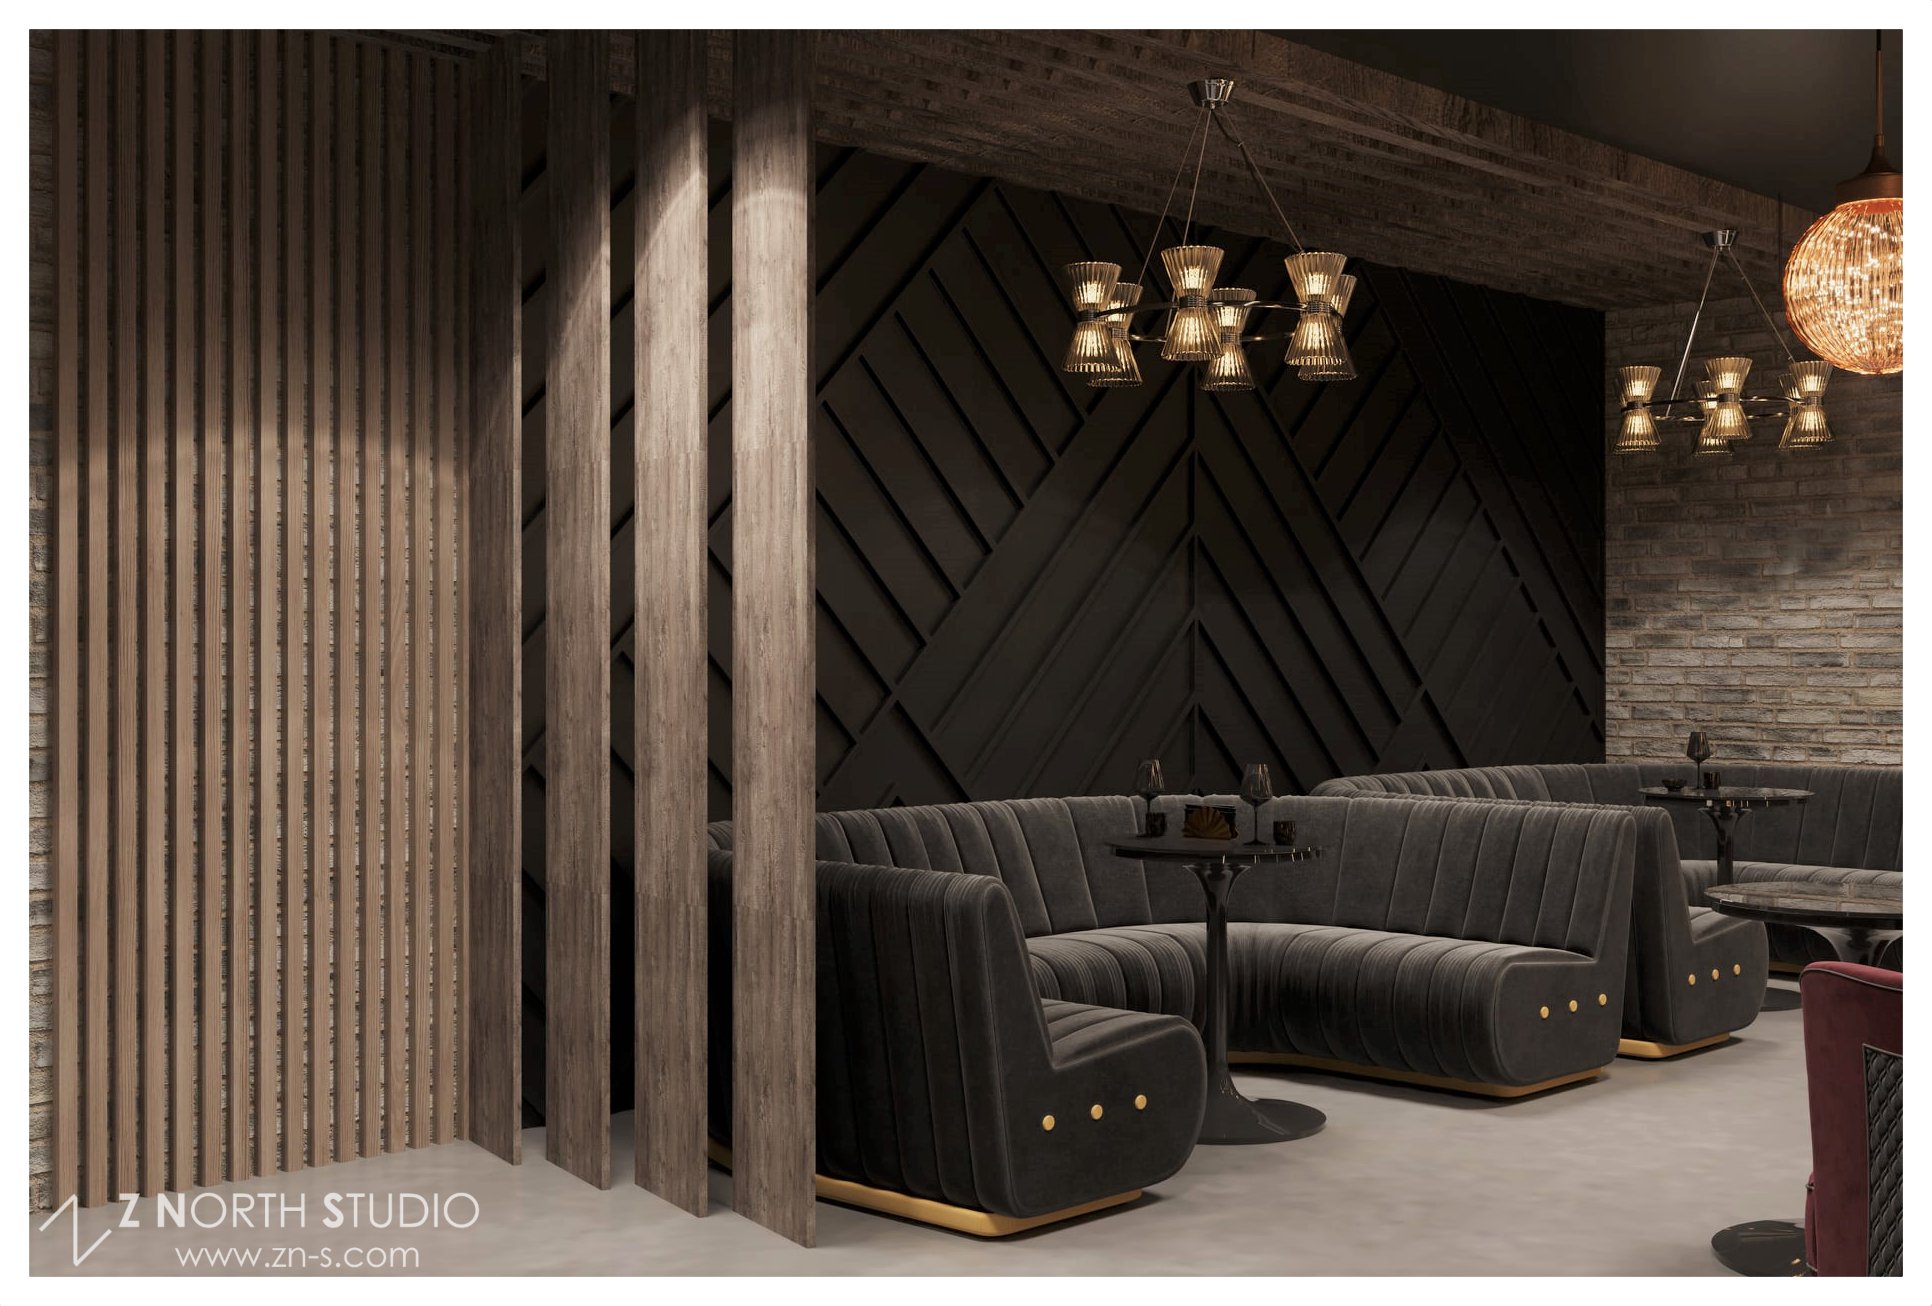 Flavio Restaurant Speakeasy lounge design - Z North Studio (4).jpg